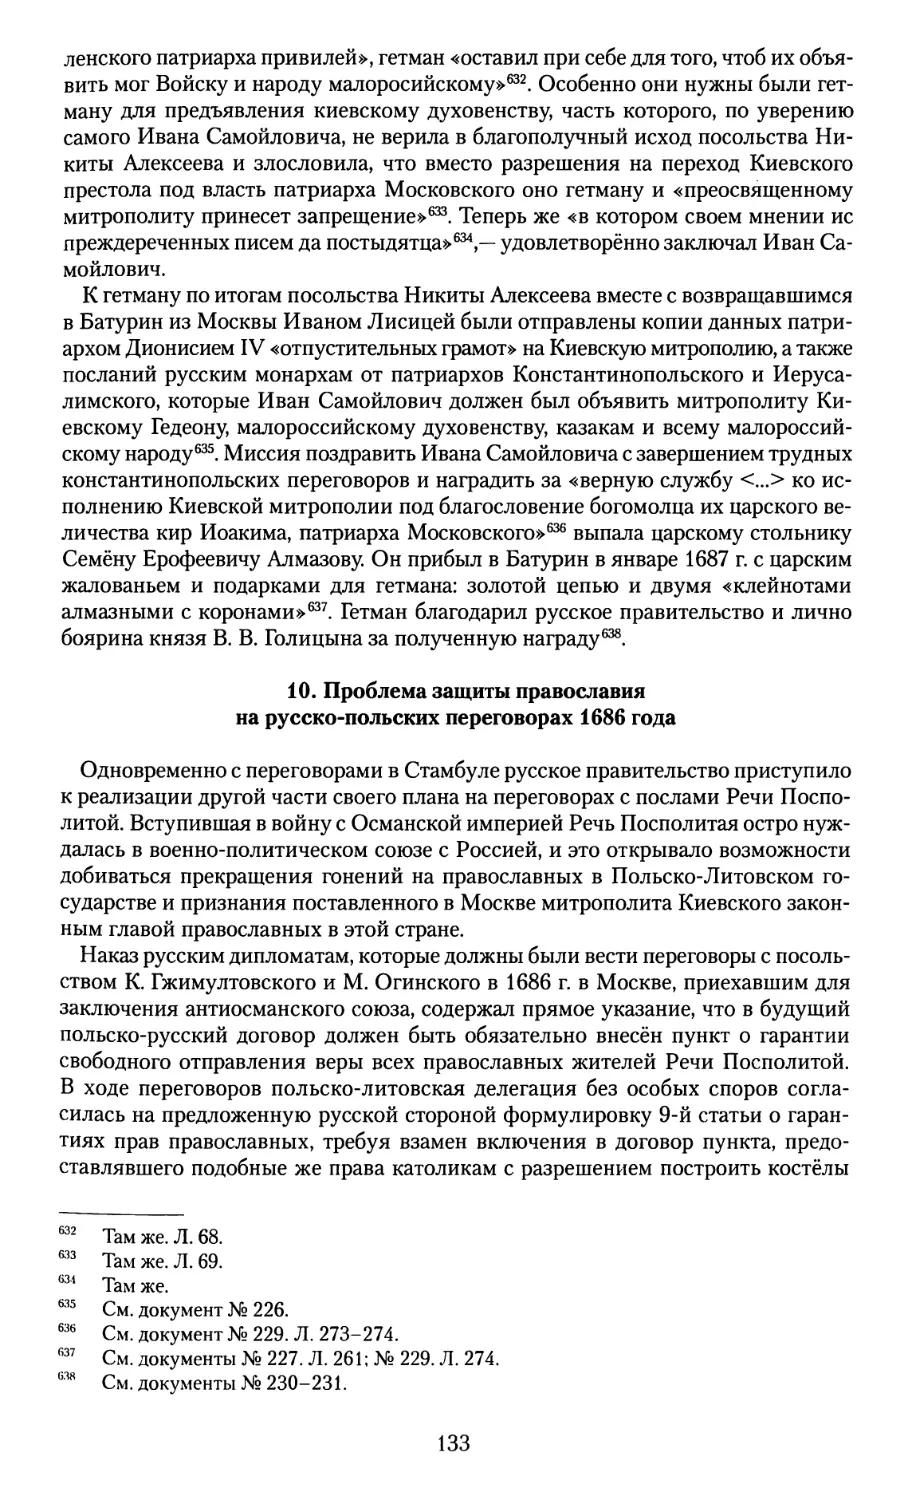 10. Проблема защиты Православия на русско-польских переговорах 1686 года